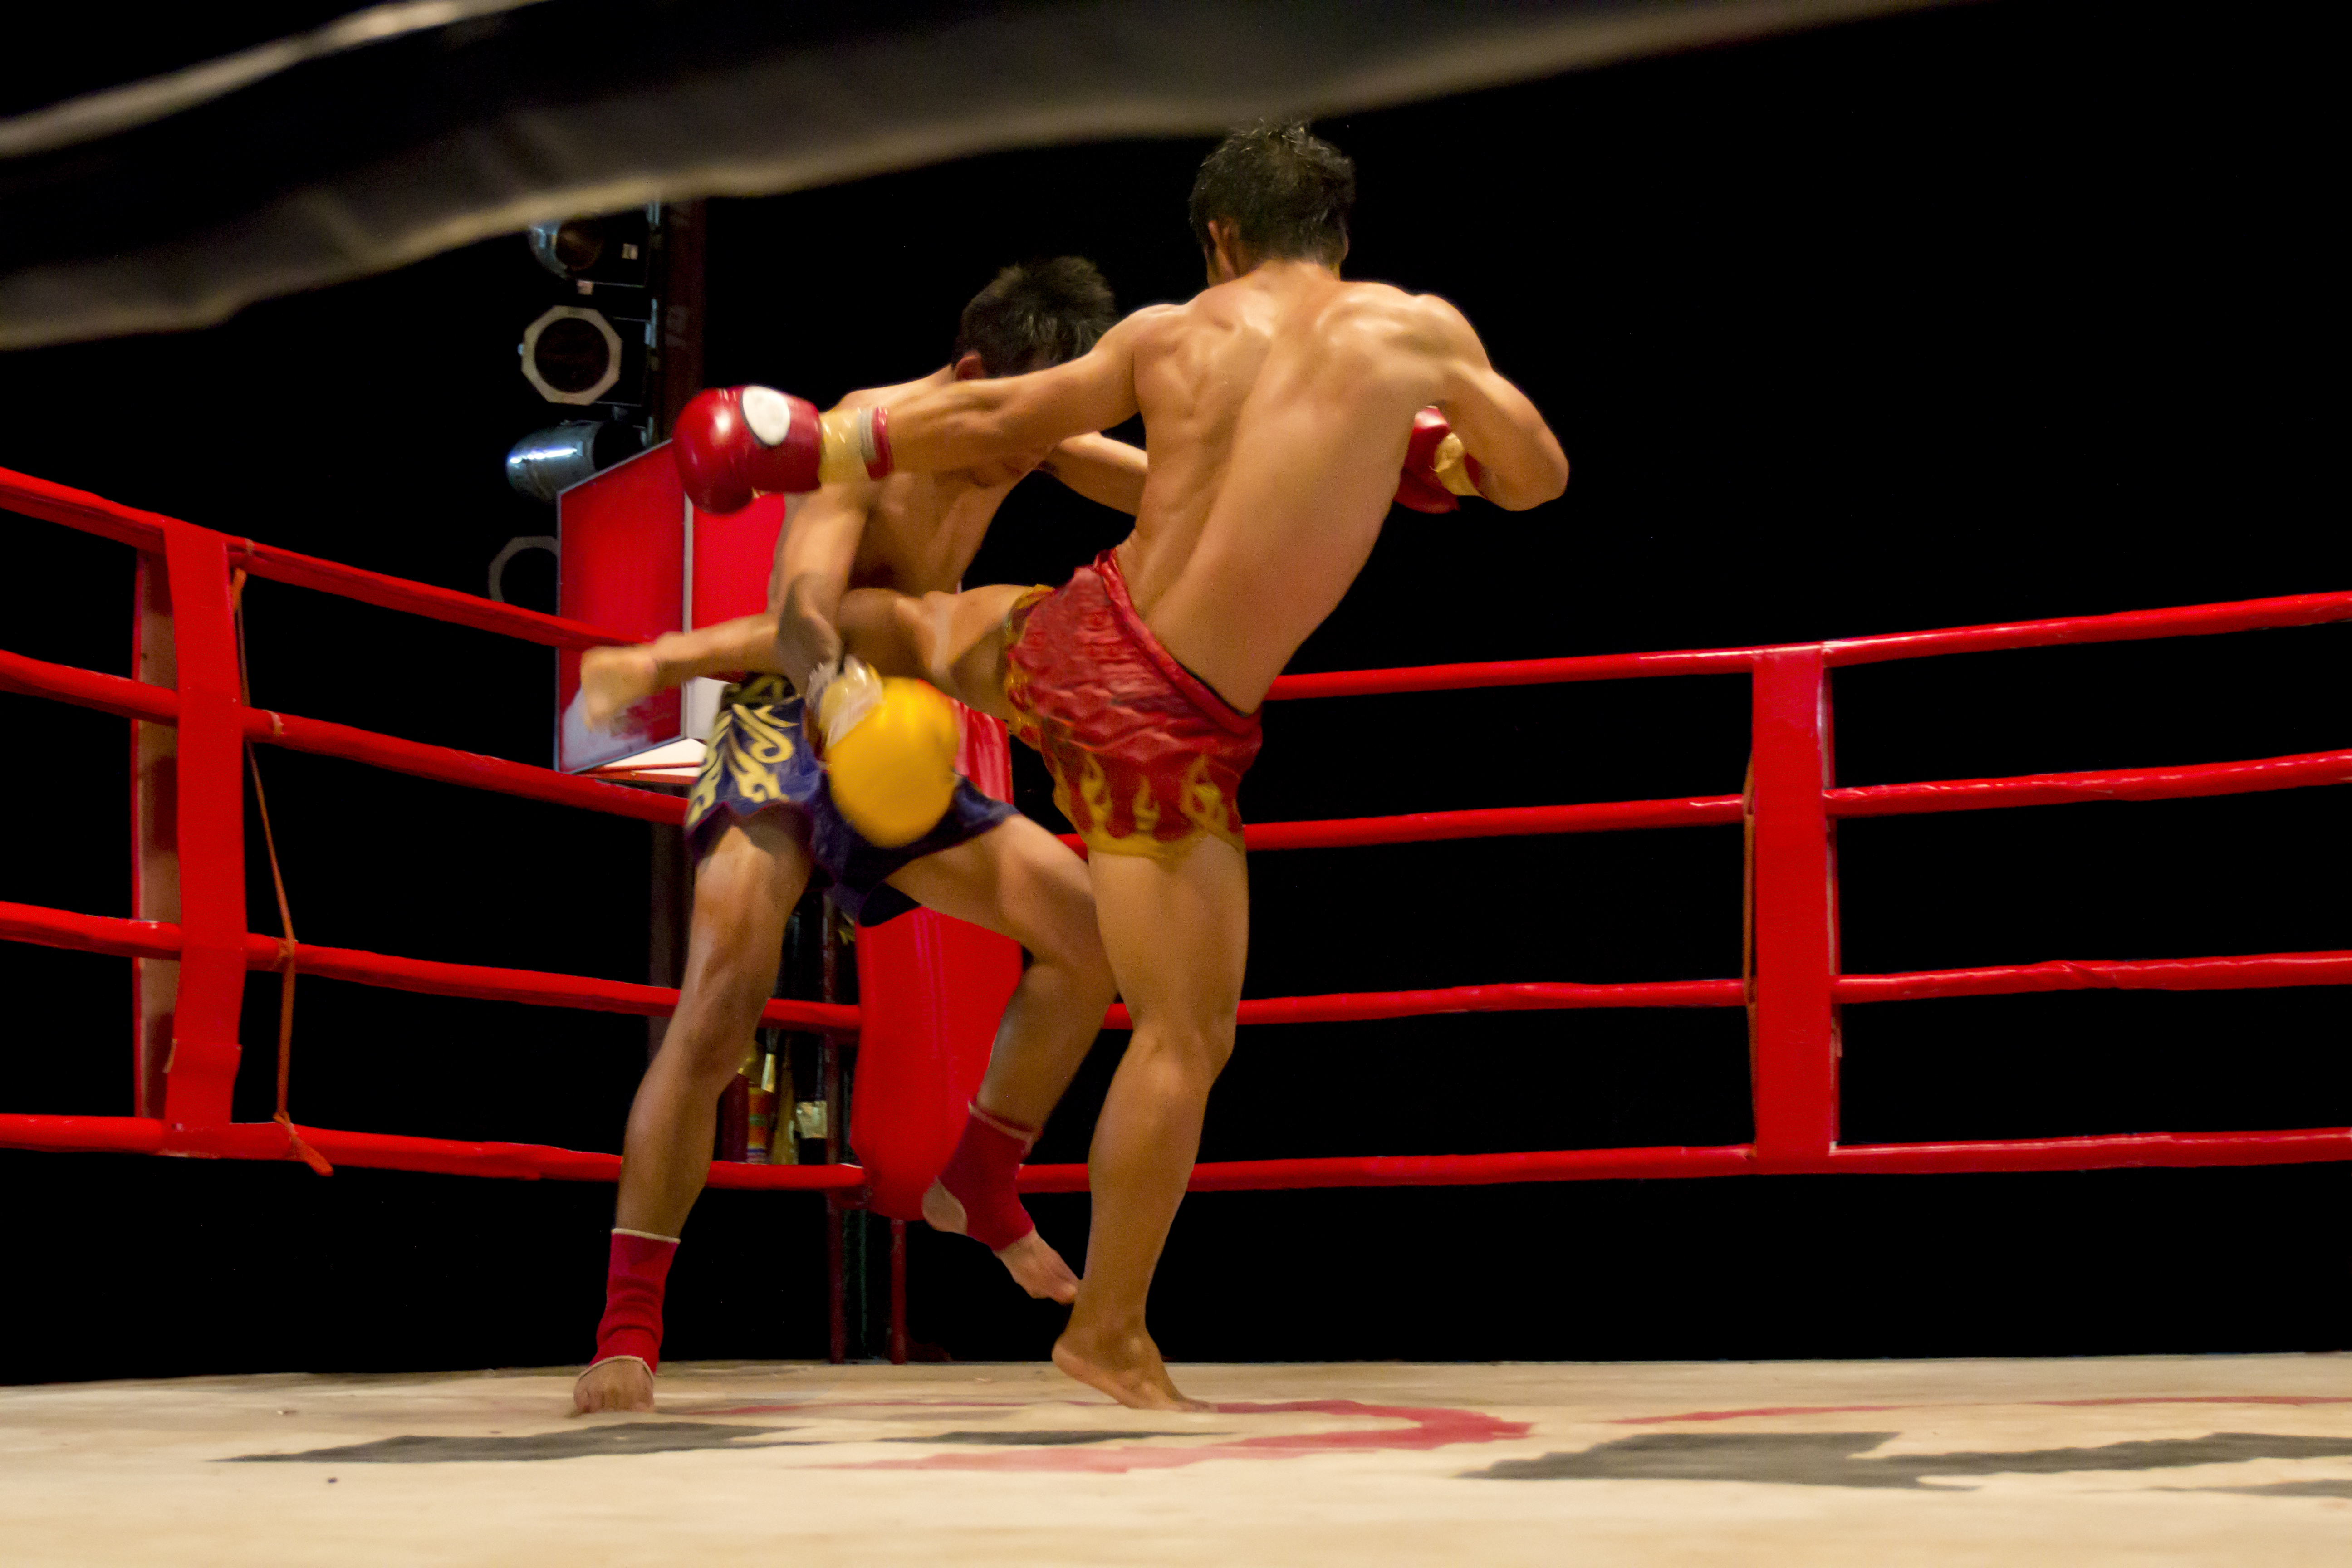 Sanda vs Muay Thai